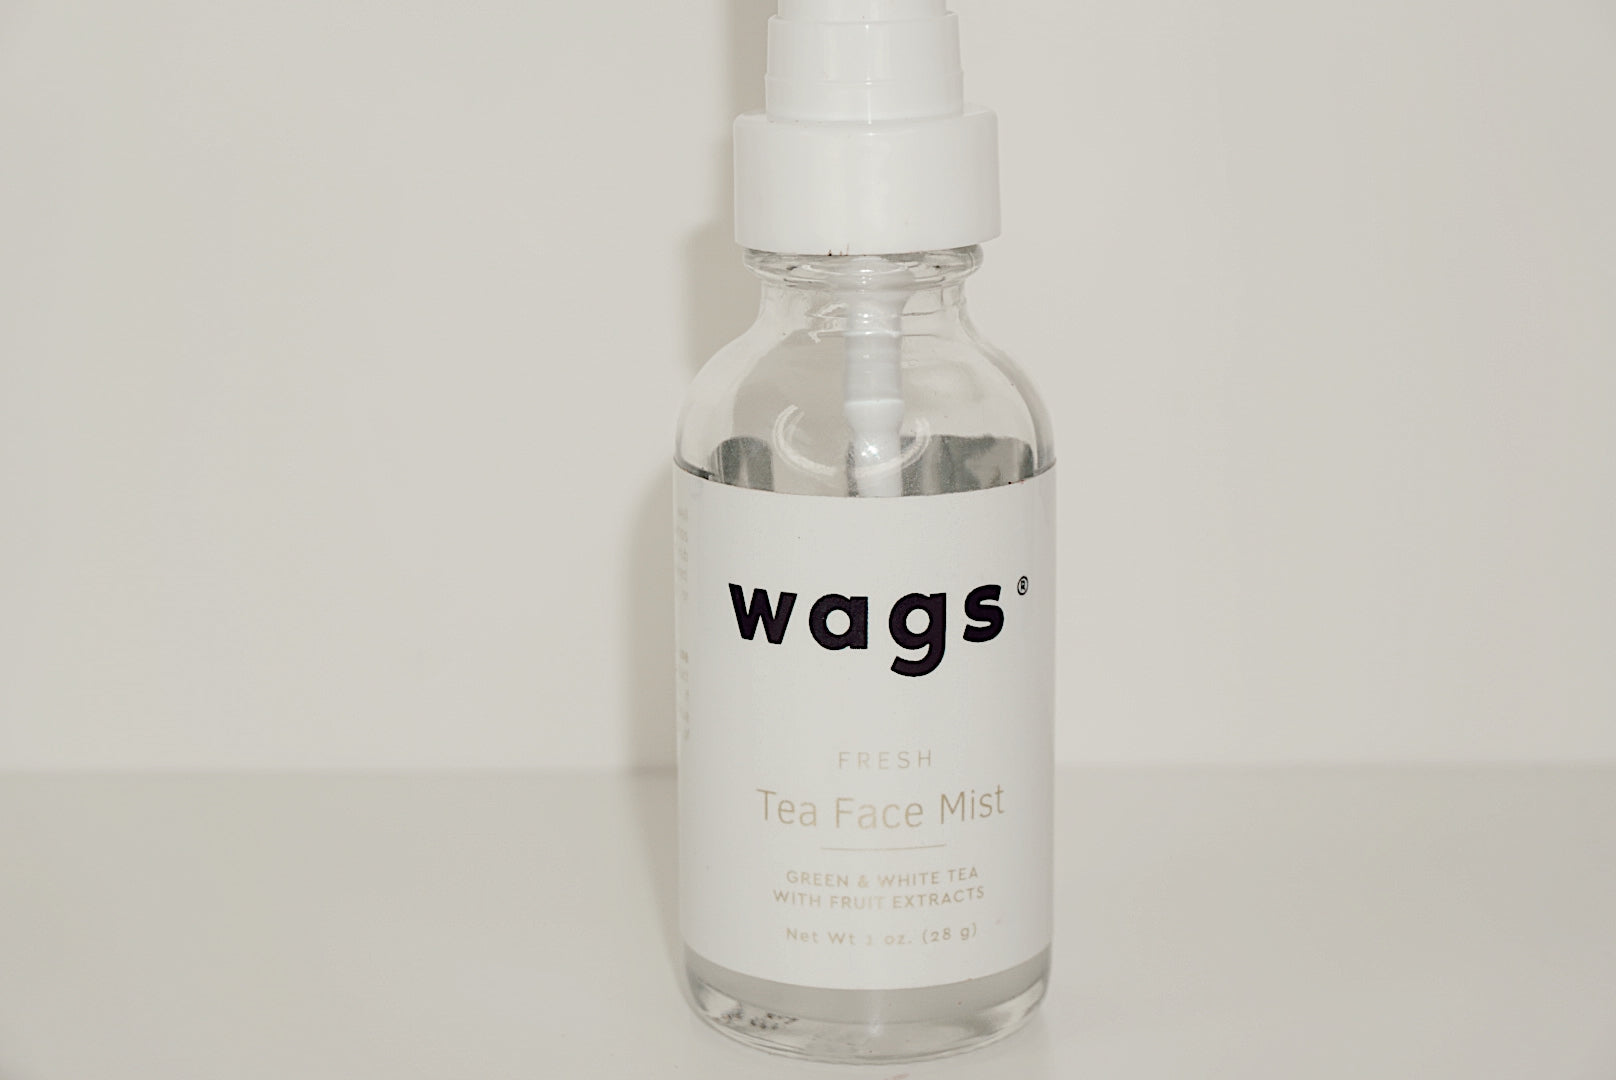 Tea Face Mist - Wags Label